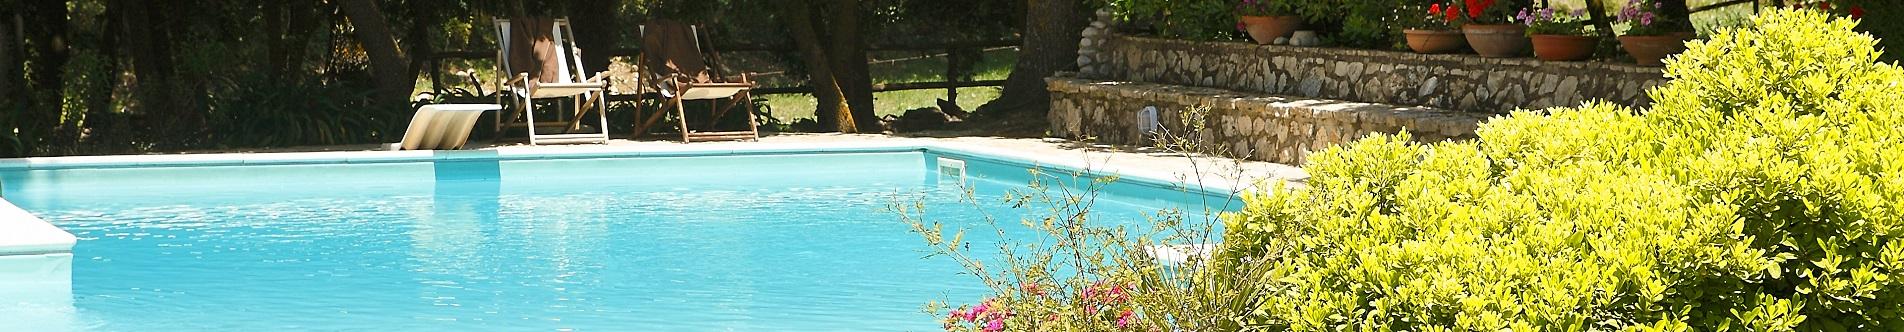 Ville in Sicilia nell'entroterra con piscina